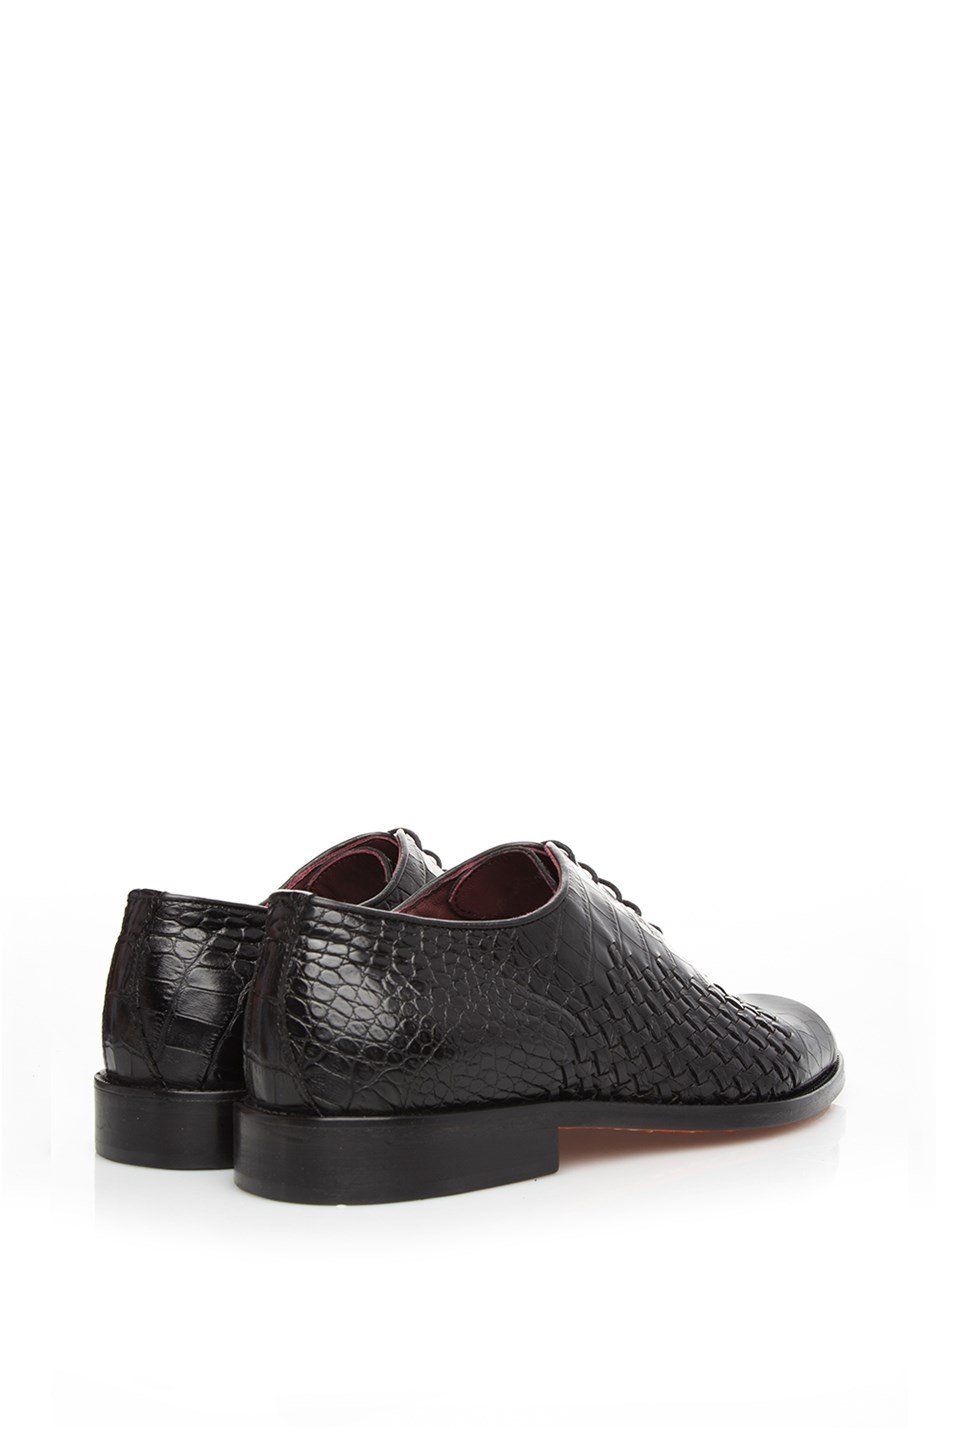 Dario Men's Classic Shoe Black Leather - İLVİ